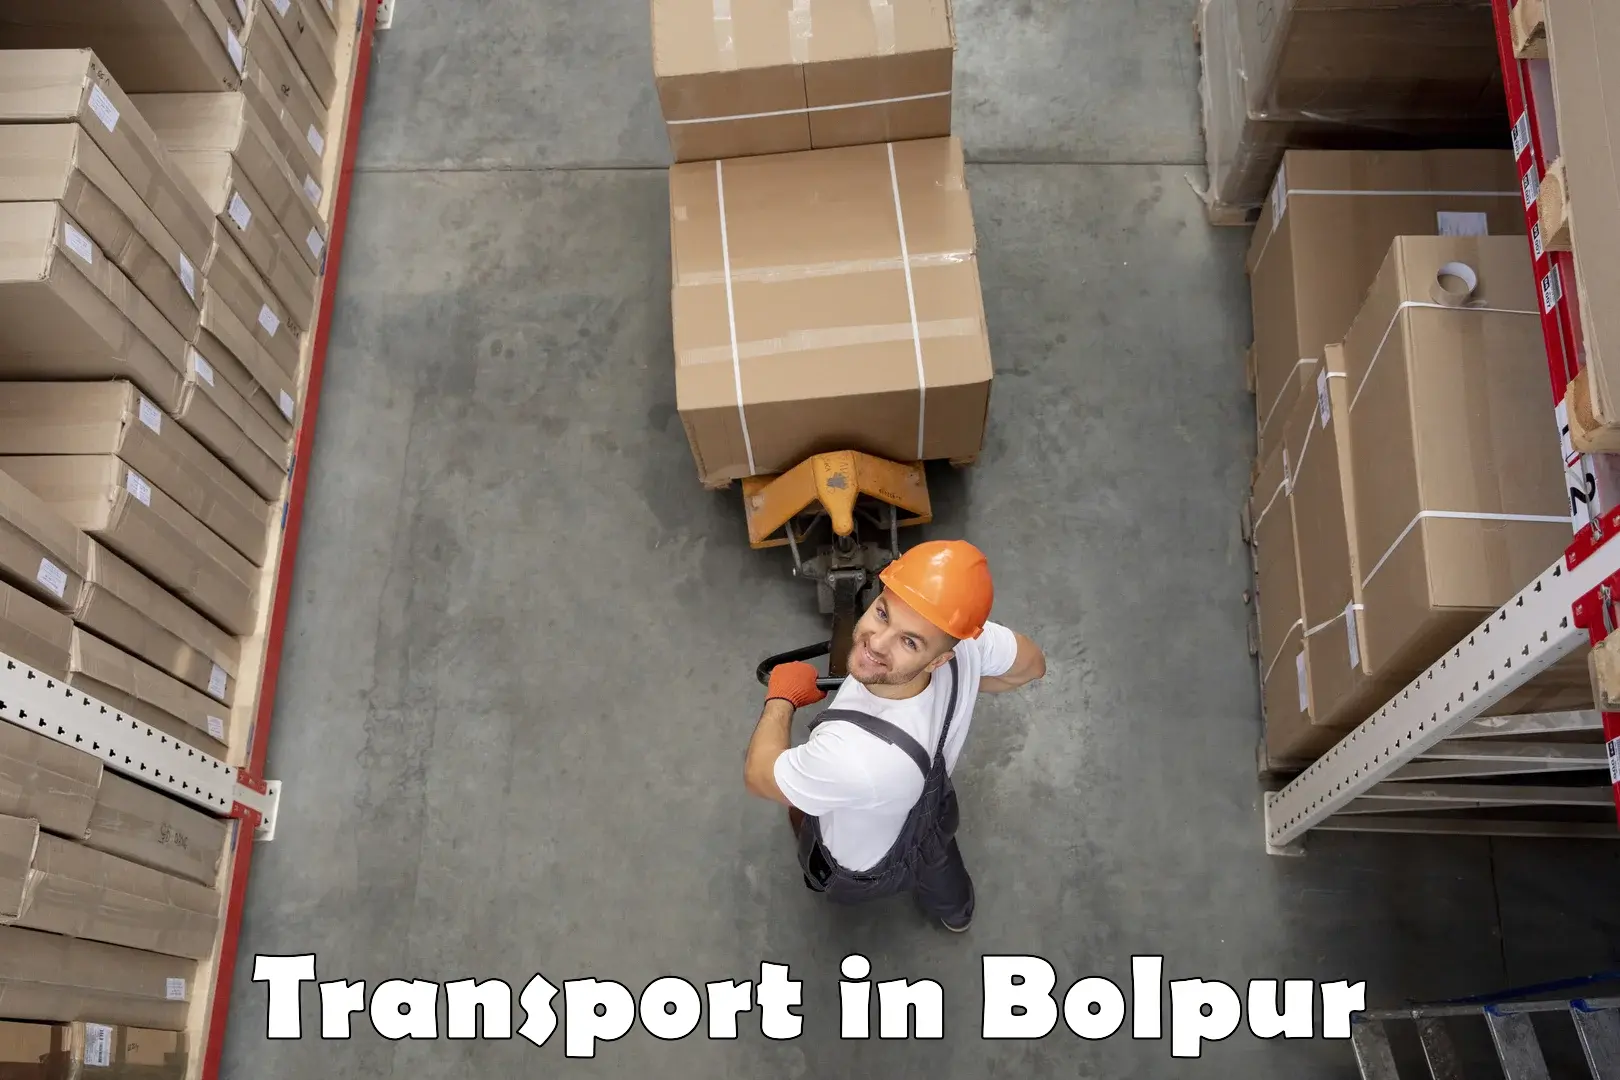 Cargo transportation services in Bolpur